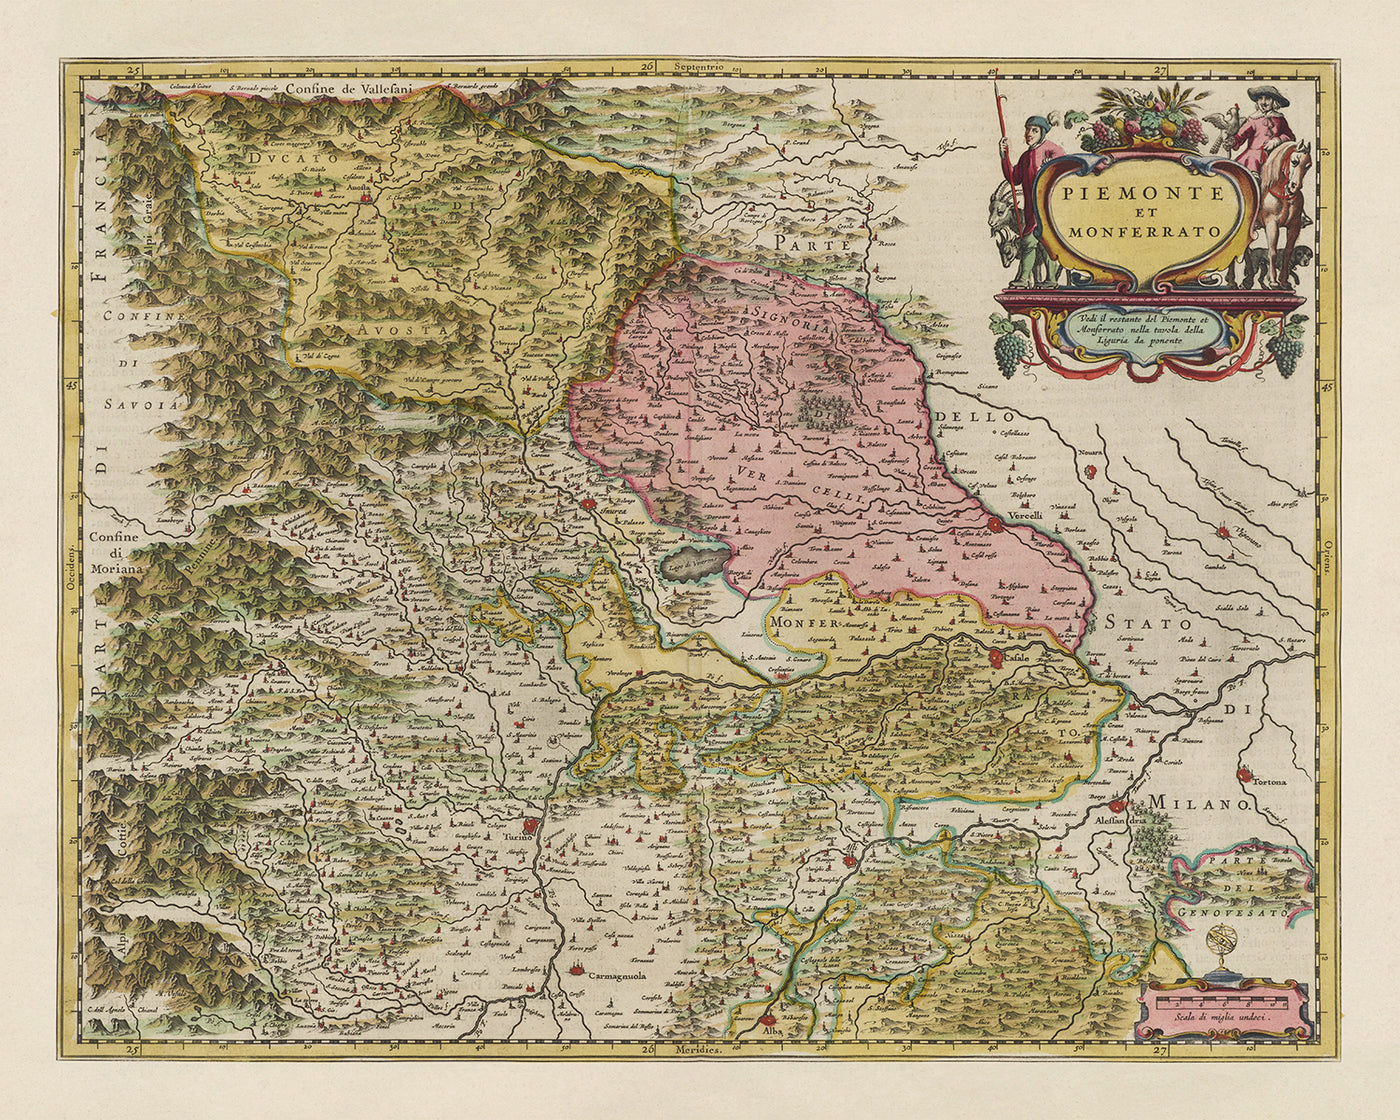 Ancienne carte du Piémont et du Monferrato, Italie par Joan Blaeu, 1665 : Turin, Alexandrie, Asti, Casale Monferrato, Vercelli